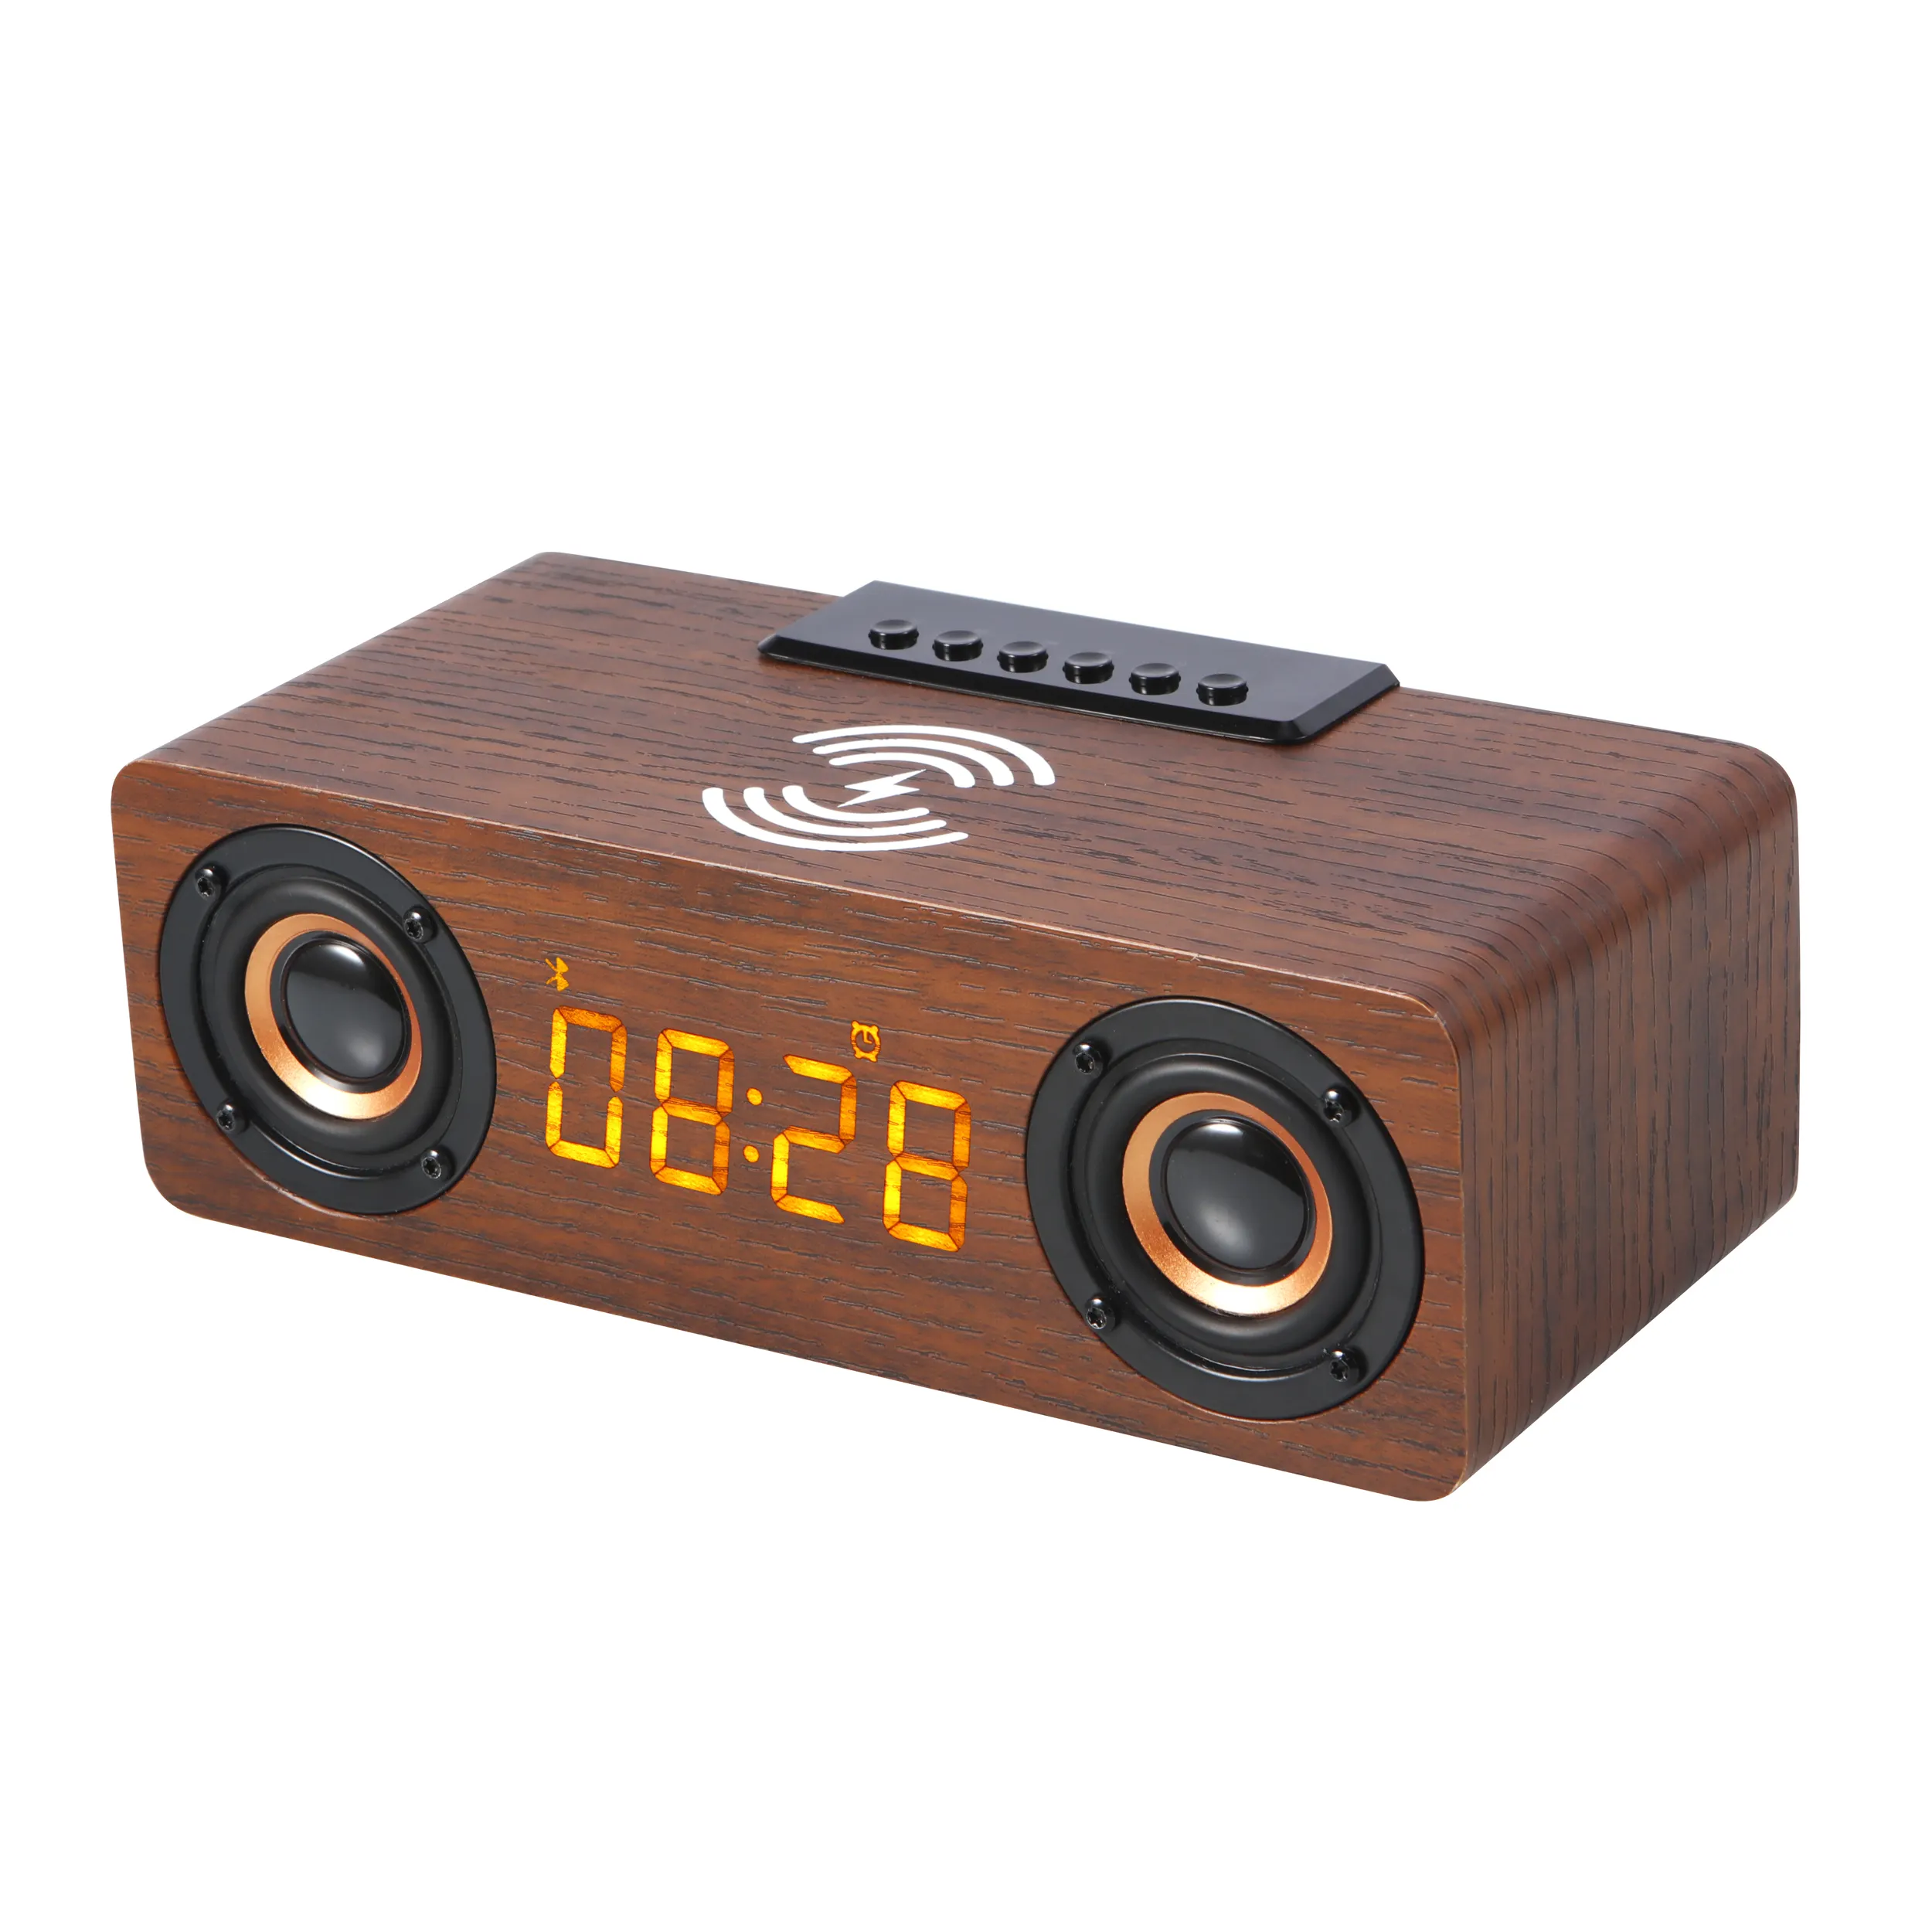 कस्टम Hifi चारों ओर ध्वनि लकड़ी वाईफ़ाई वक्ताओं बास स्मार्ट 5.1 बीटी लकड़ी अलार्म घड़ी और वायरलेस चार्ज के साथ वायरलेस स्पीकर